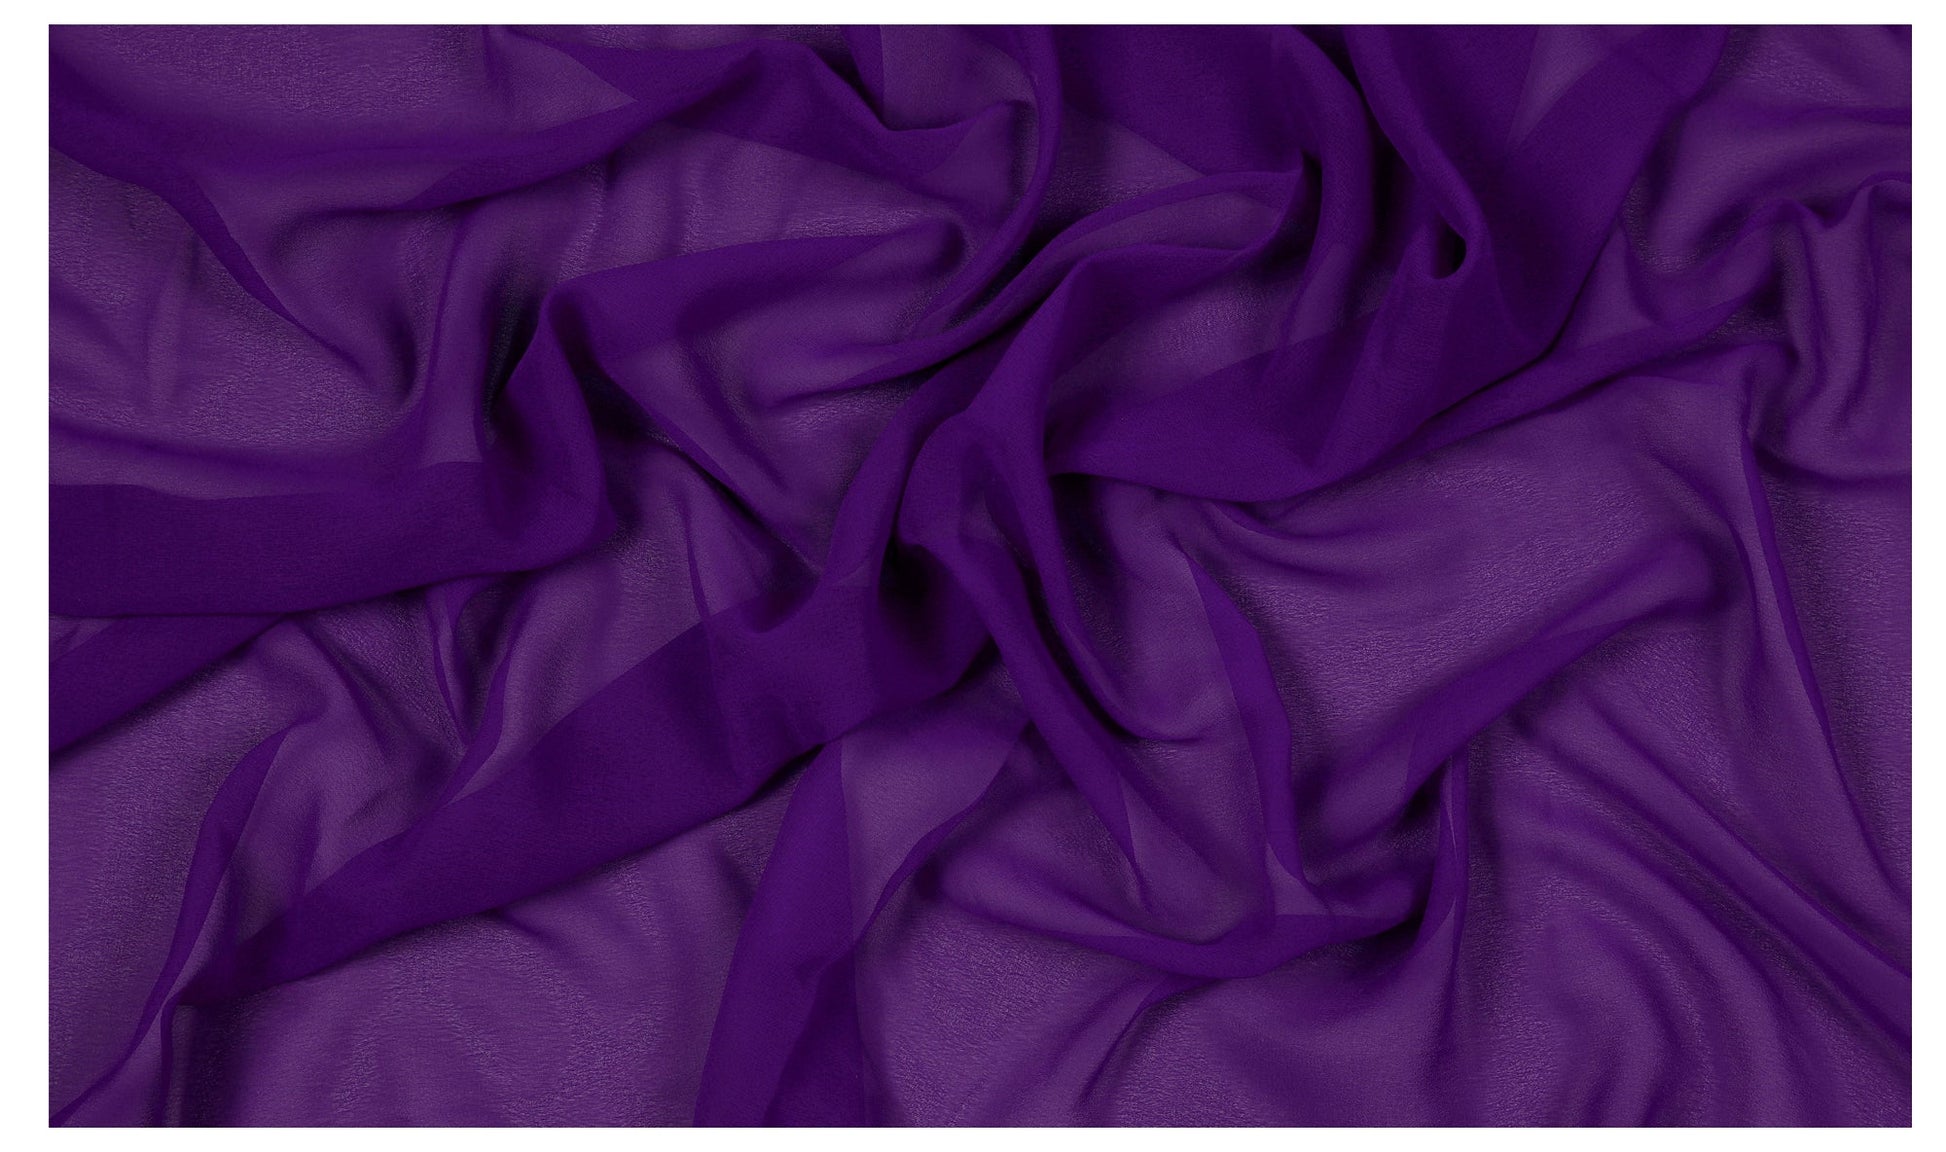 Cadbury Purple,9a26fb41-a1ba-4328-a2cd-87addb713db1